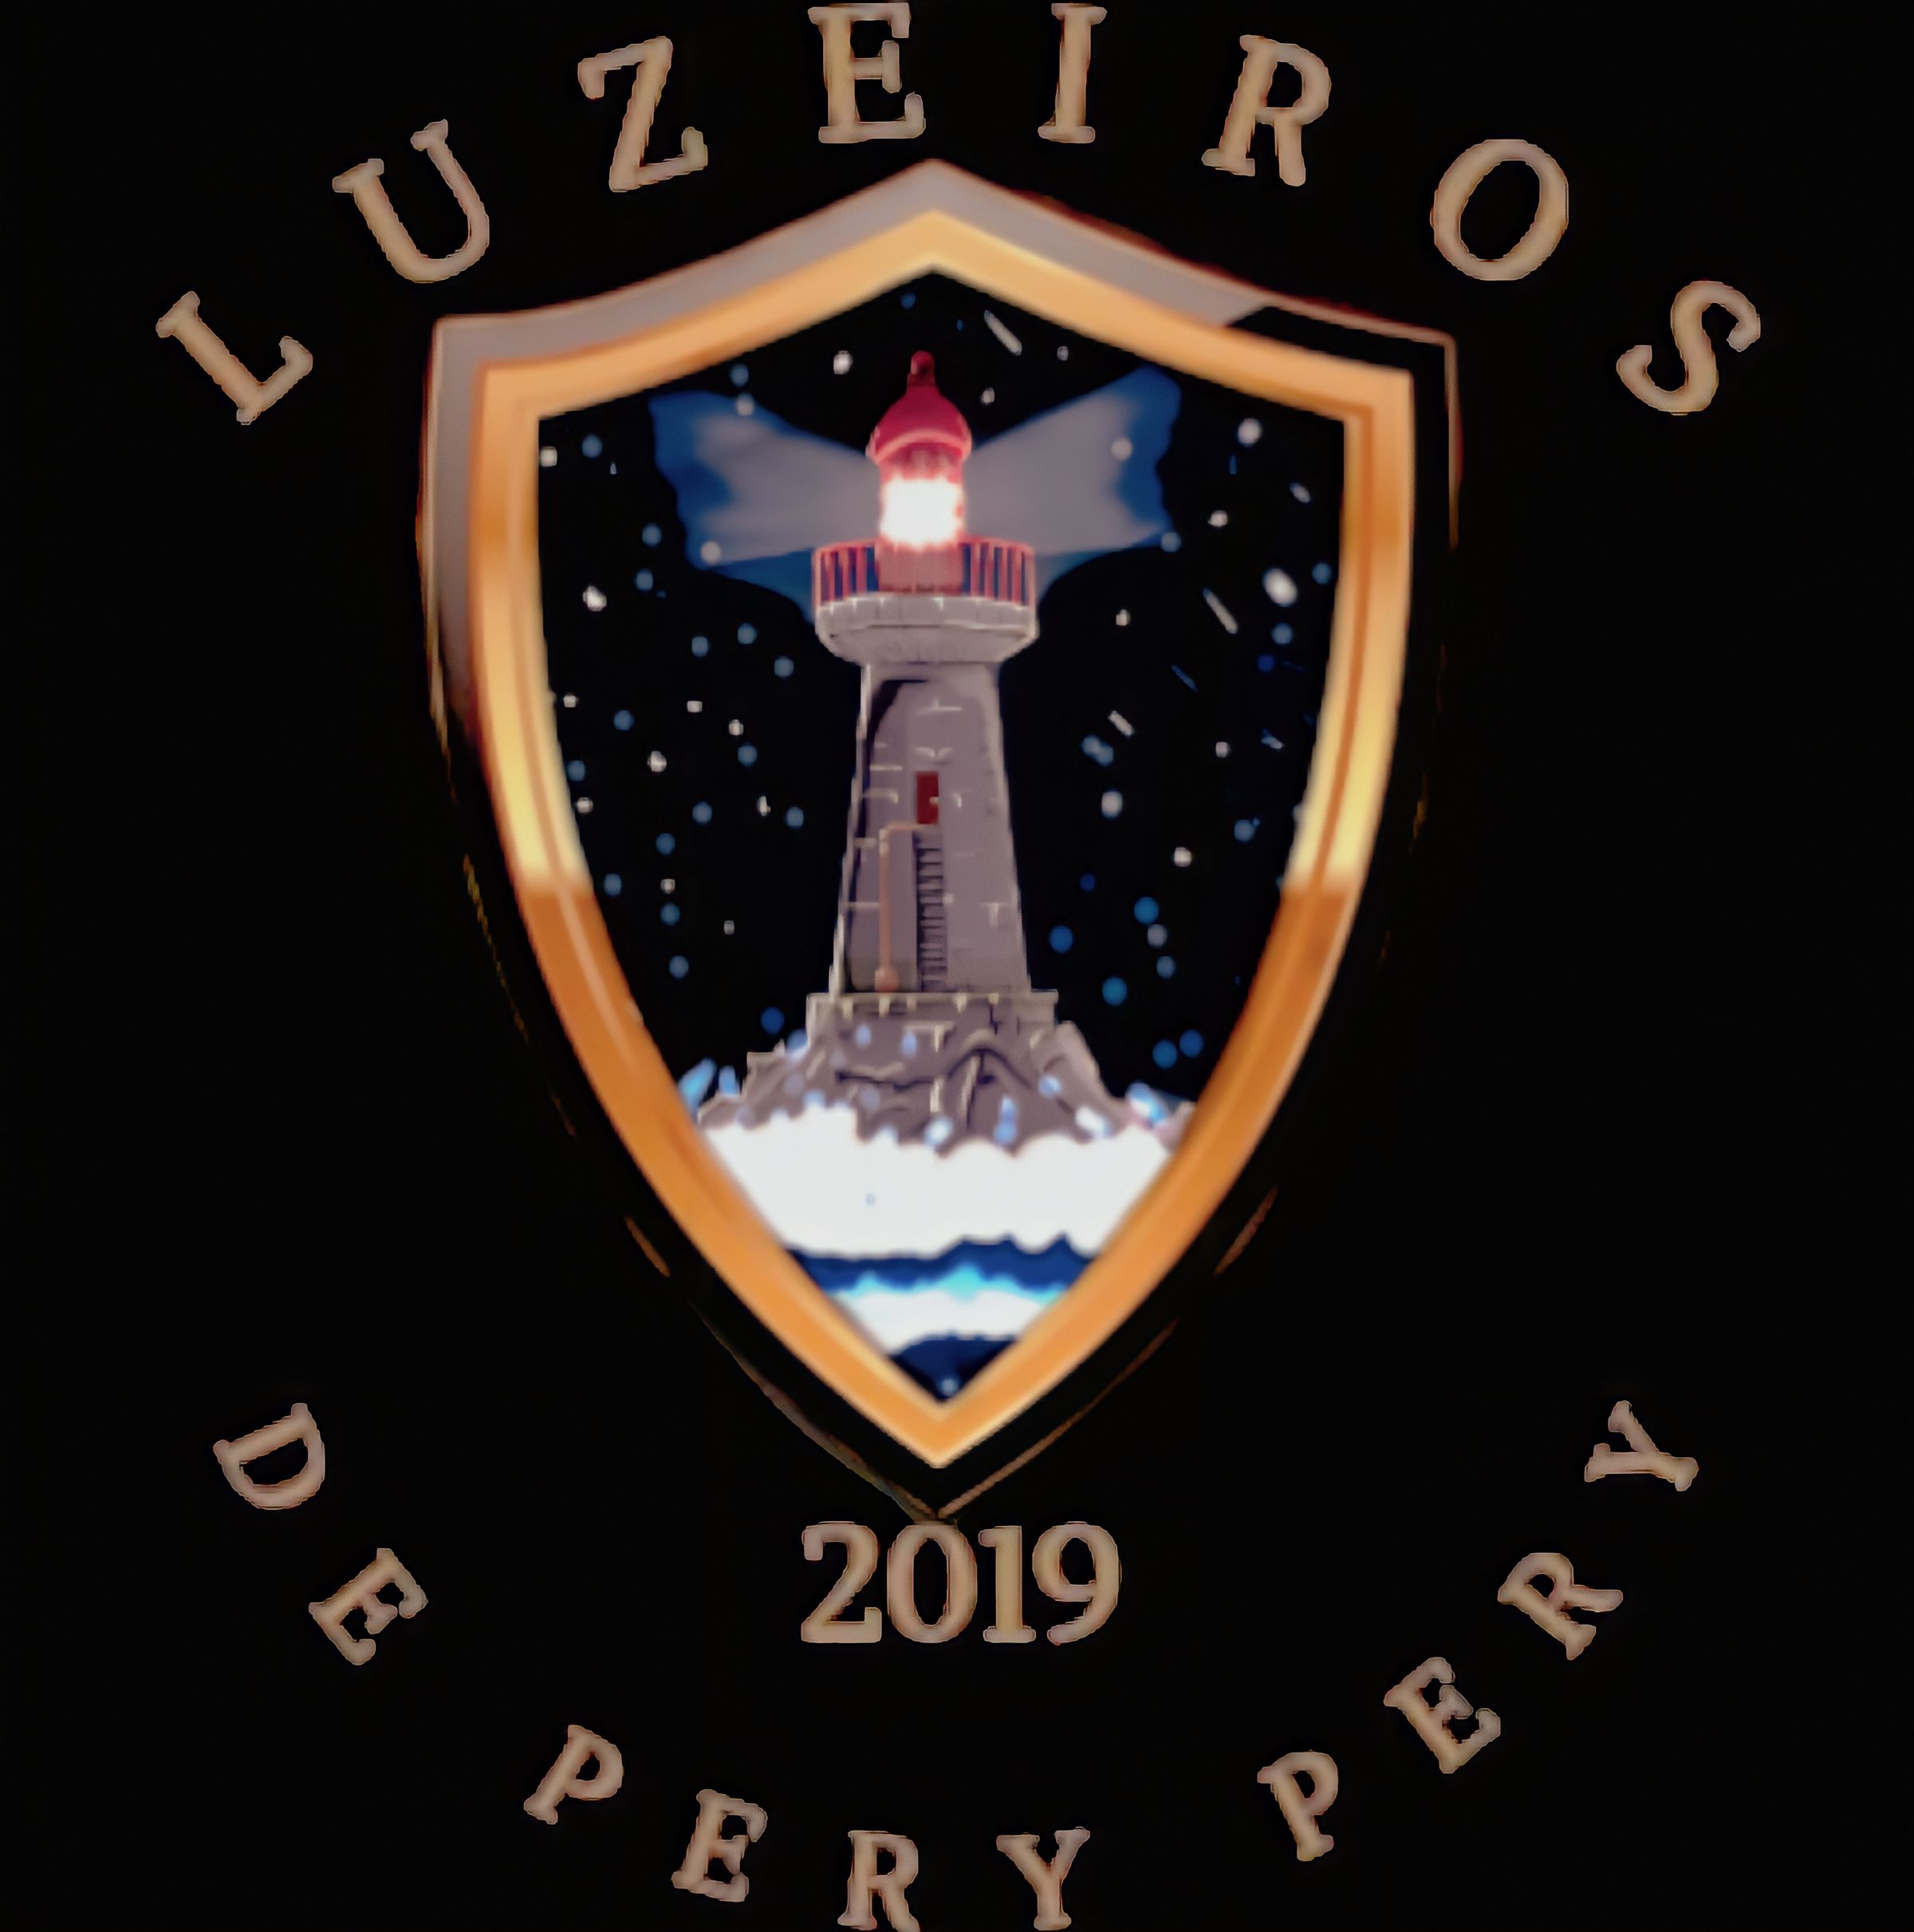 LUZEIROS DE PERY PERY